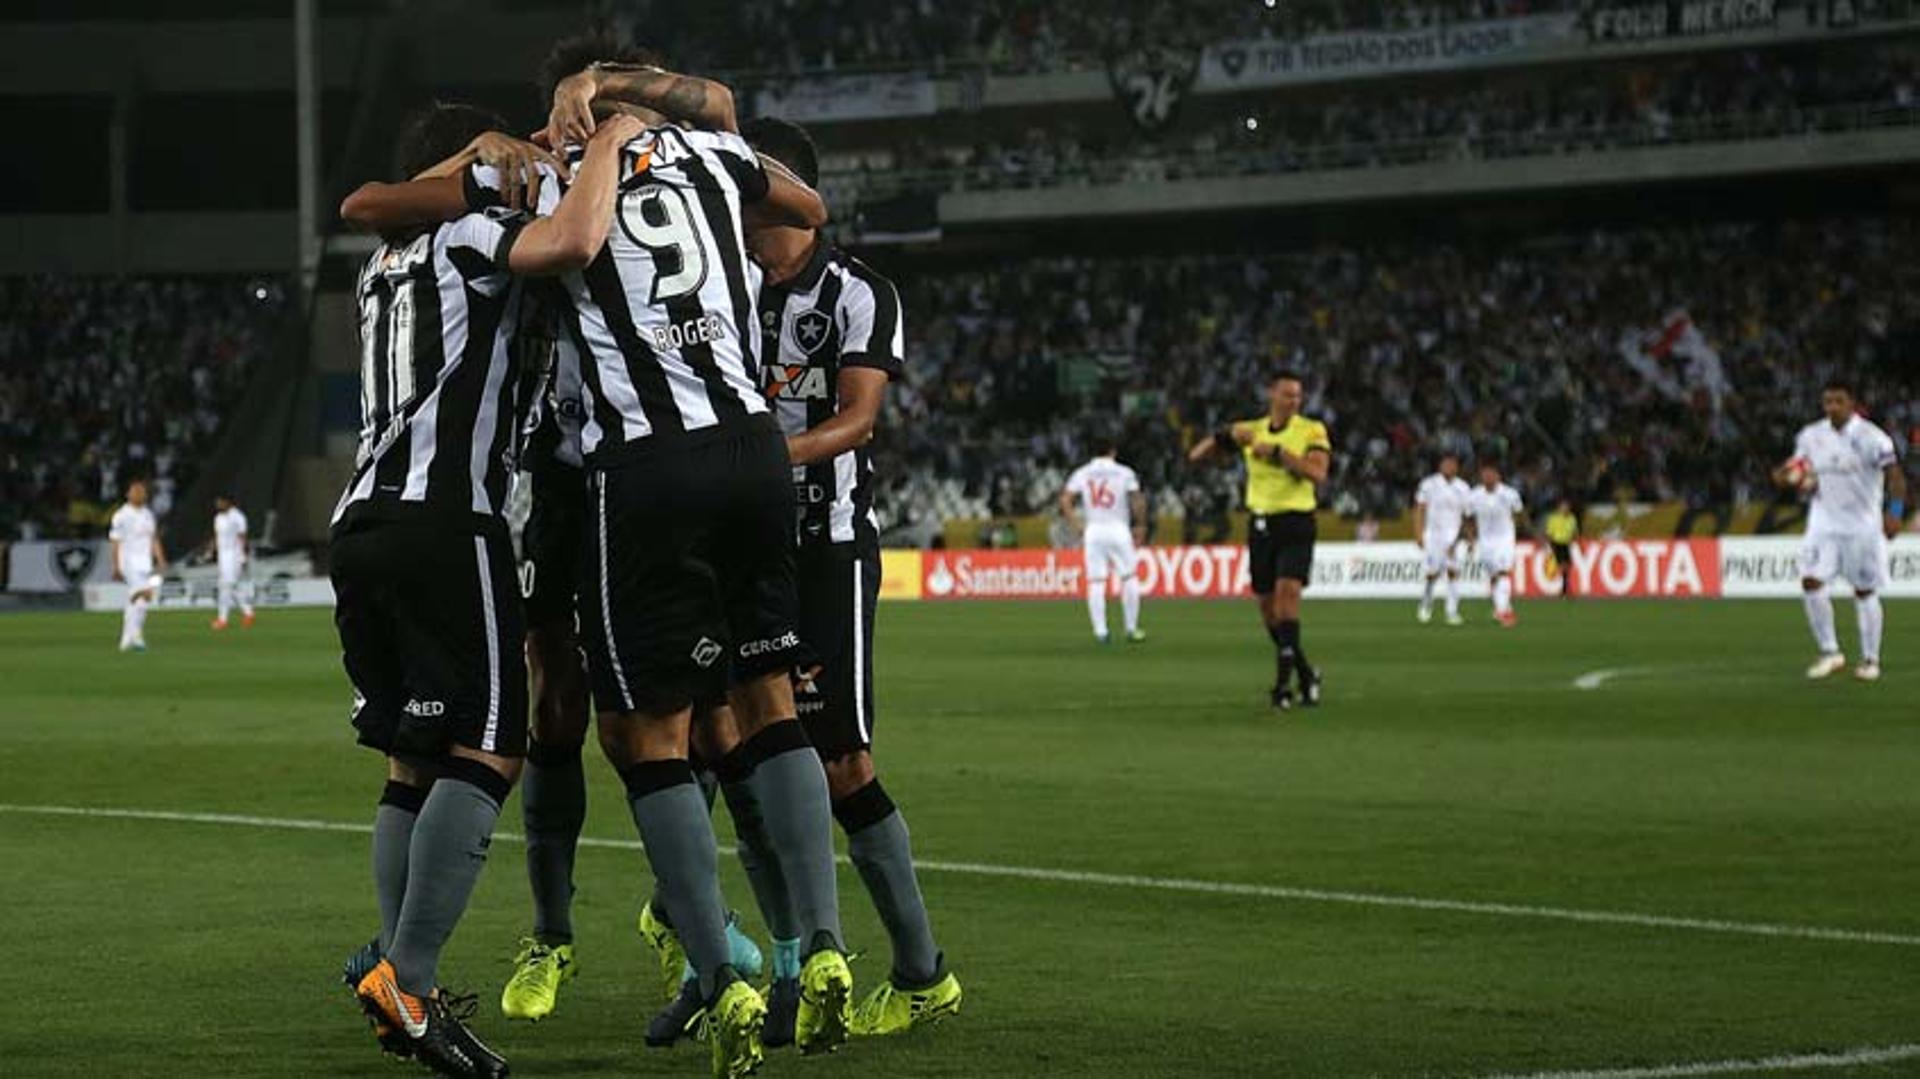 O Botafogo vence o Nacional do Uruguai por 2 a 0 no Nilton Santos e se classifica para as quartas de final da Copa Libertadores, o que não acontecia desde a década de 1970